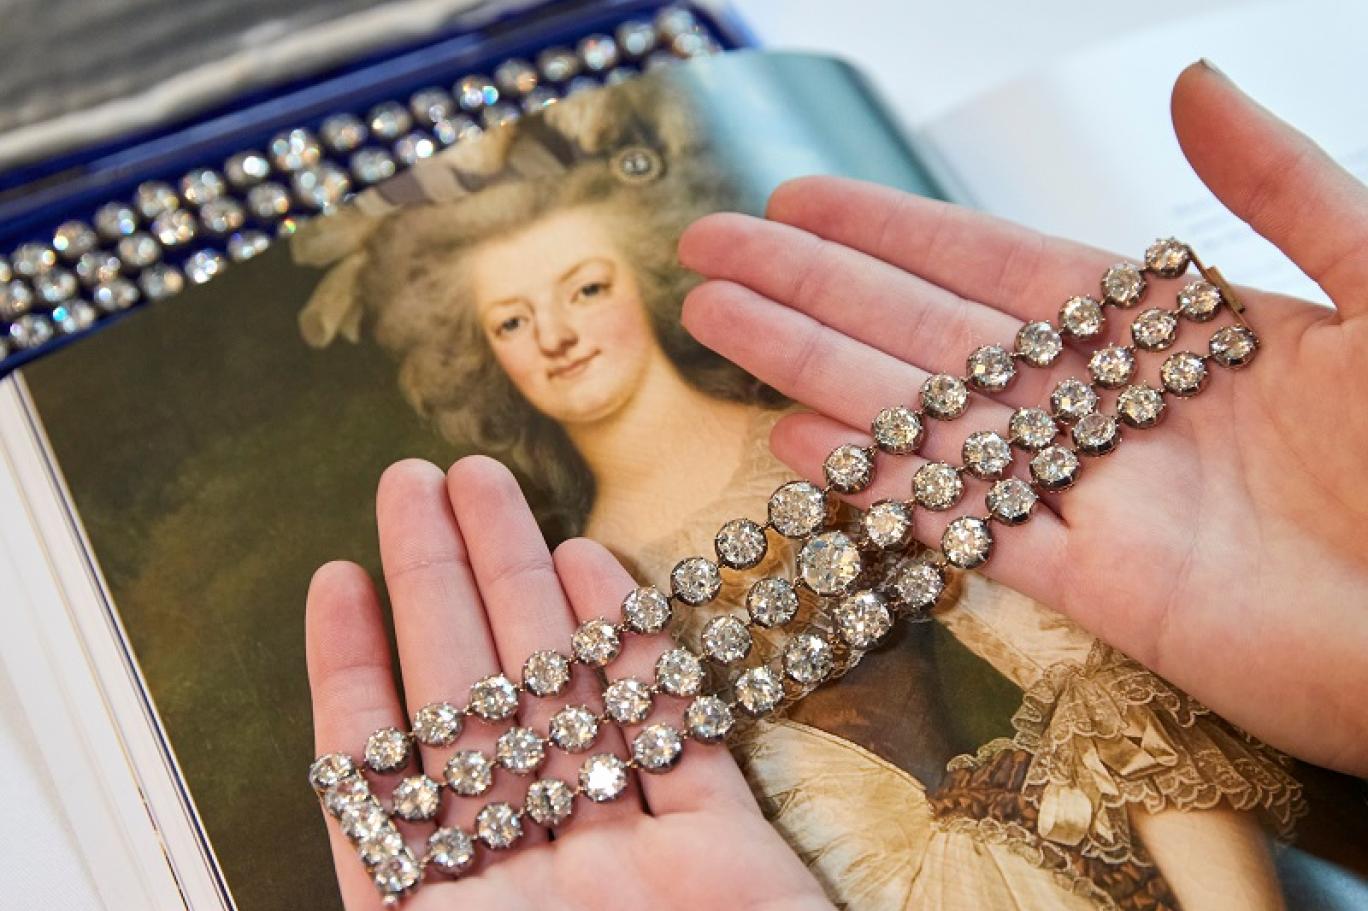 بيع سوارين للملكة ماري أنطوانيت بـ 8 ملايين دولار